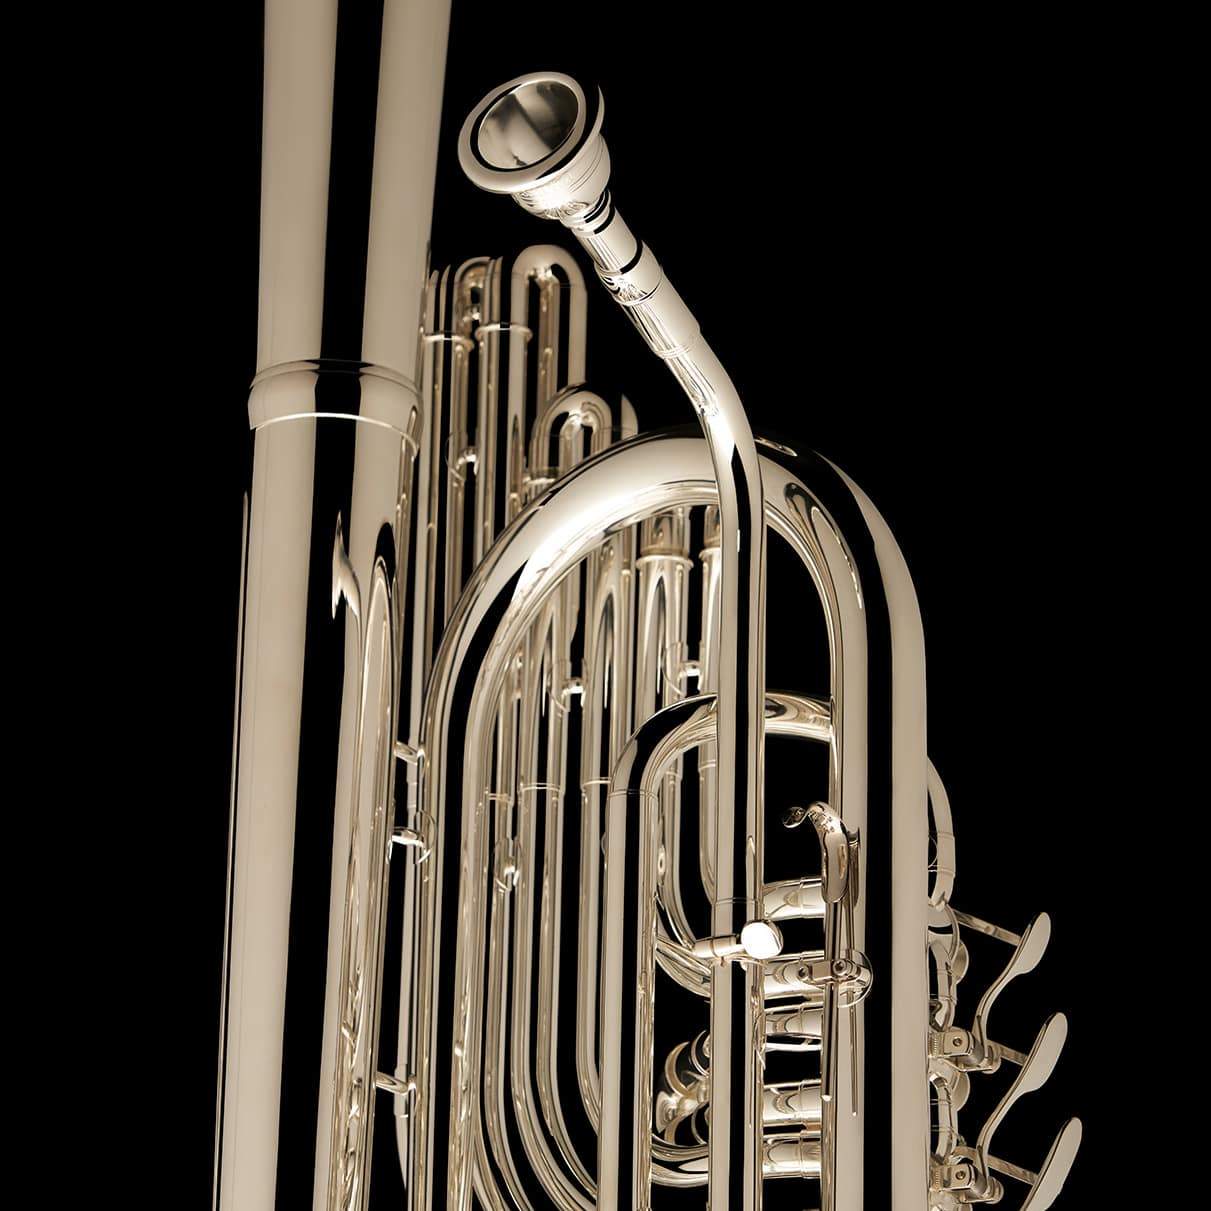 Cornet Saxhorn Flugelhorn Bugle Trumpet, Pocket Trumpet, brass